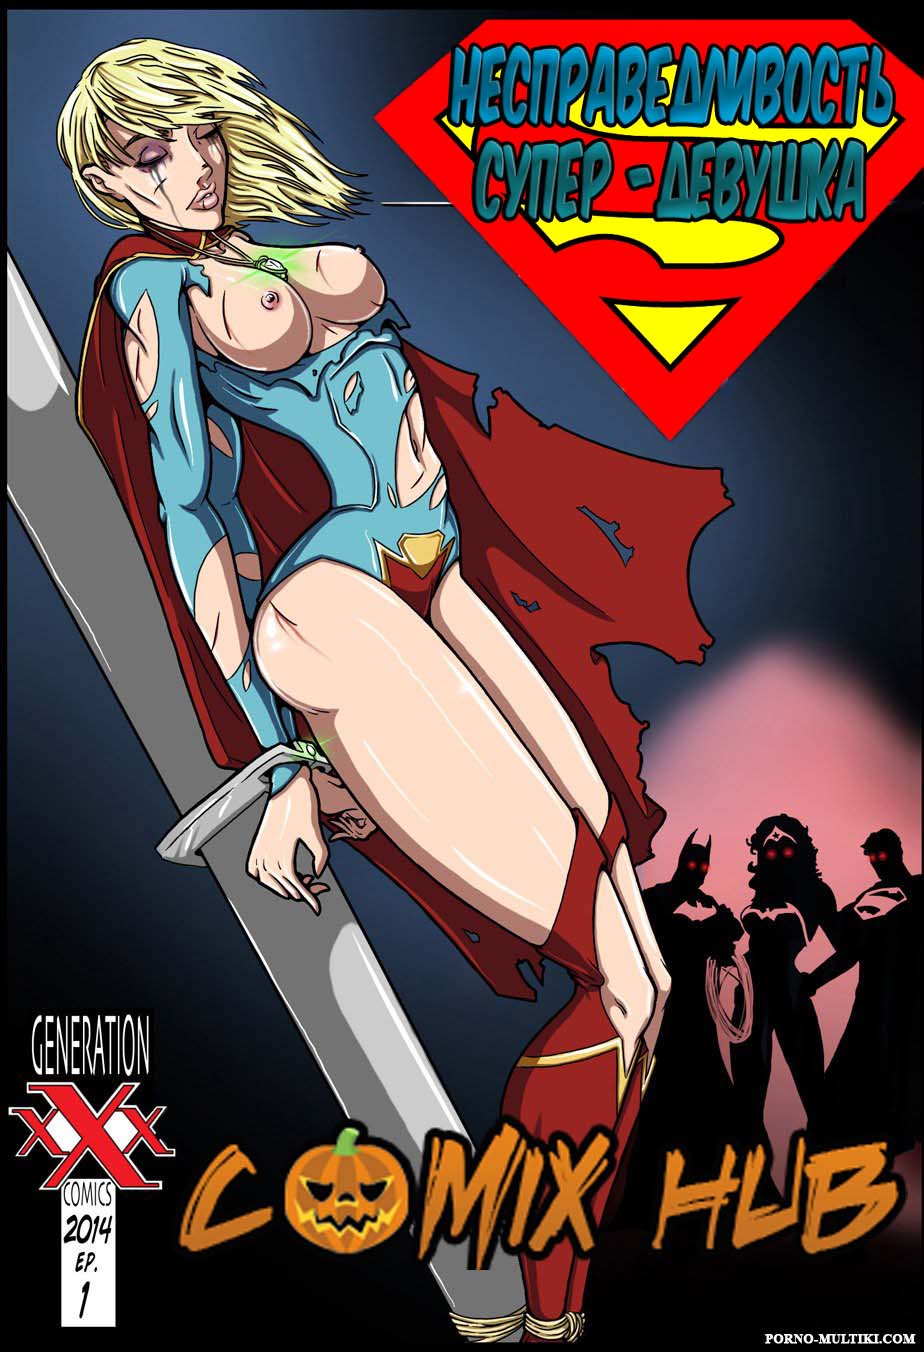 Порно комиксы - Несправедливость - Супер-девушка Большие члены, БДСМ, Лесбиянки, Минет, Насилие, Порно комиксы, Супер-герои